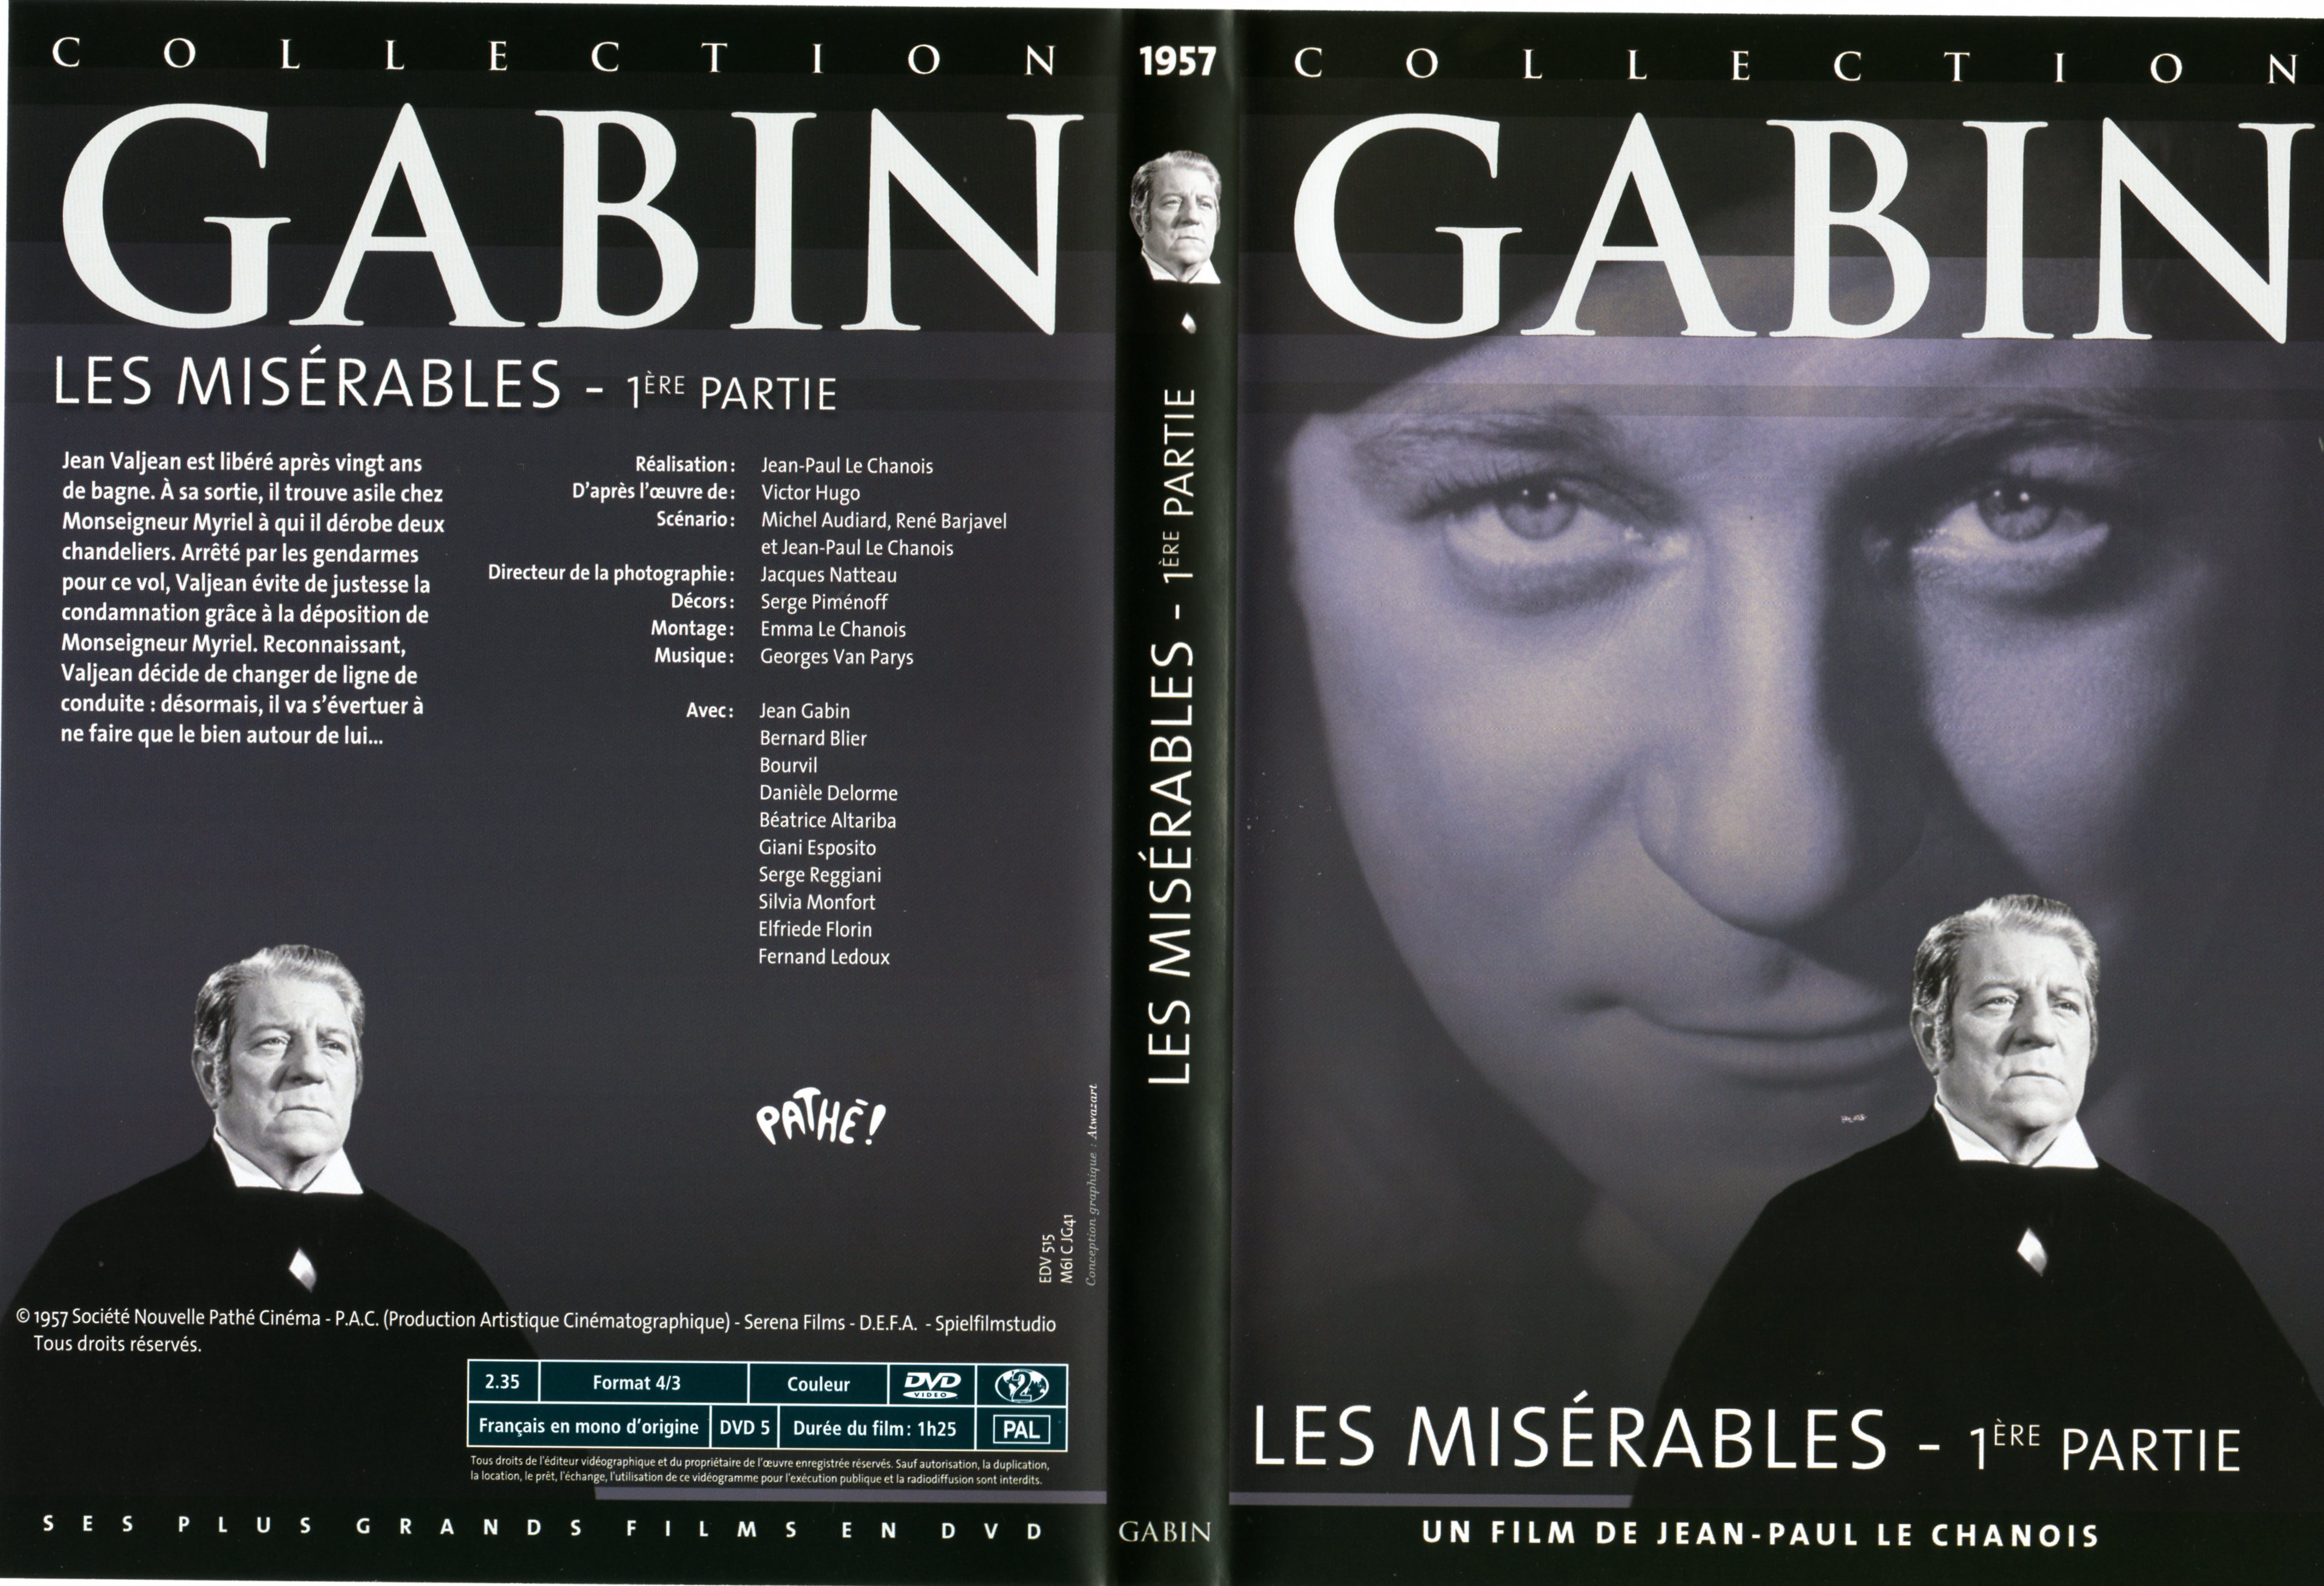 Jaquette DVD Les misrables (Gabin) 1 re poque v2